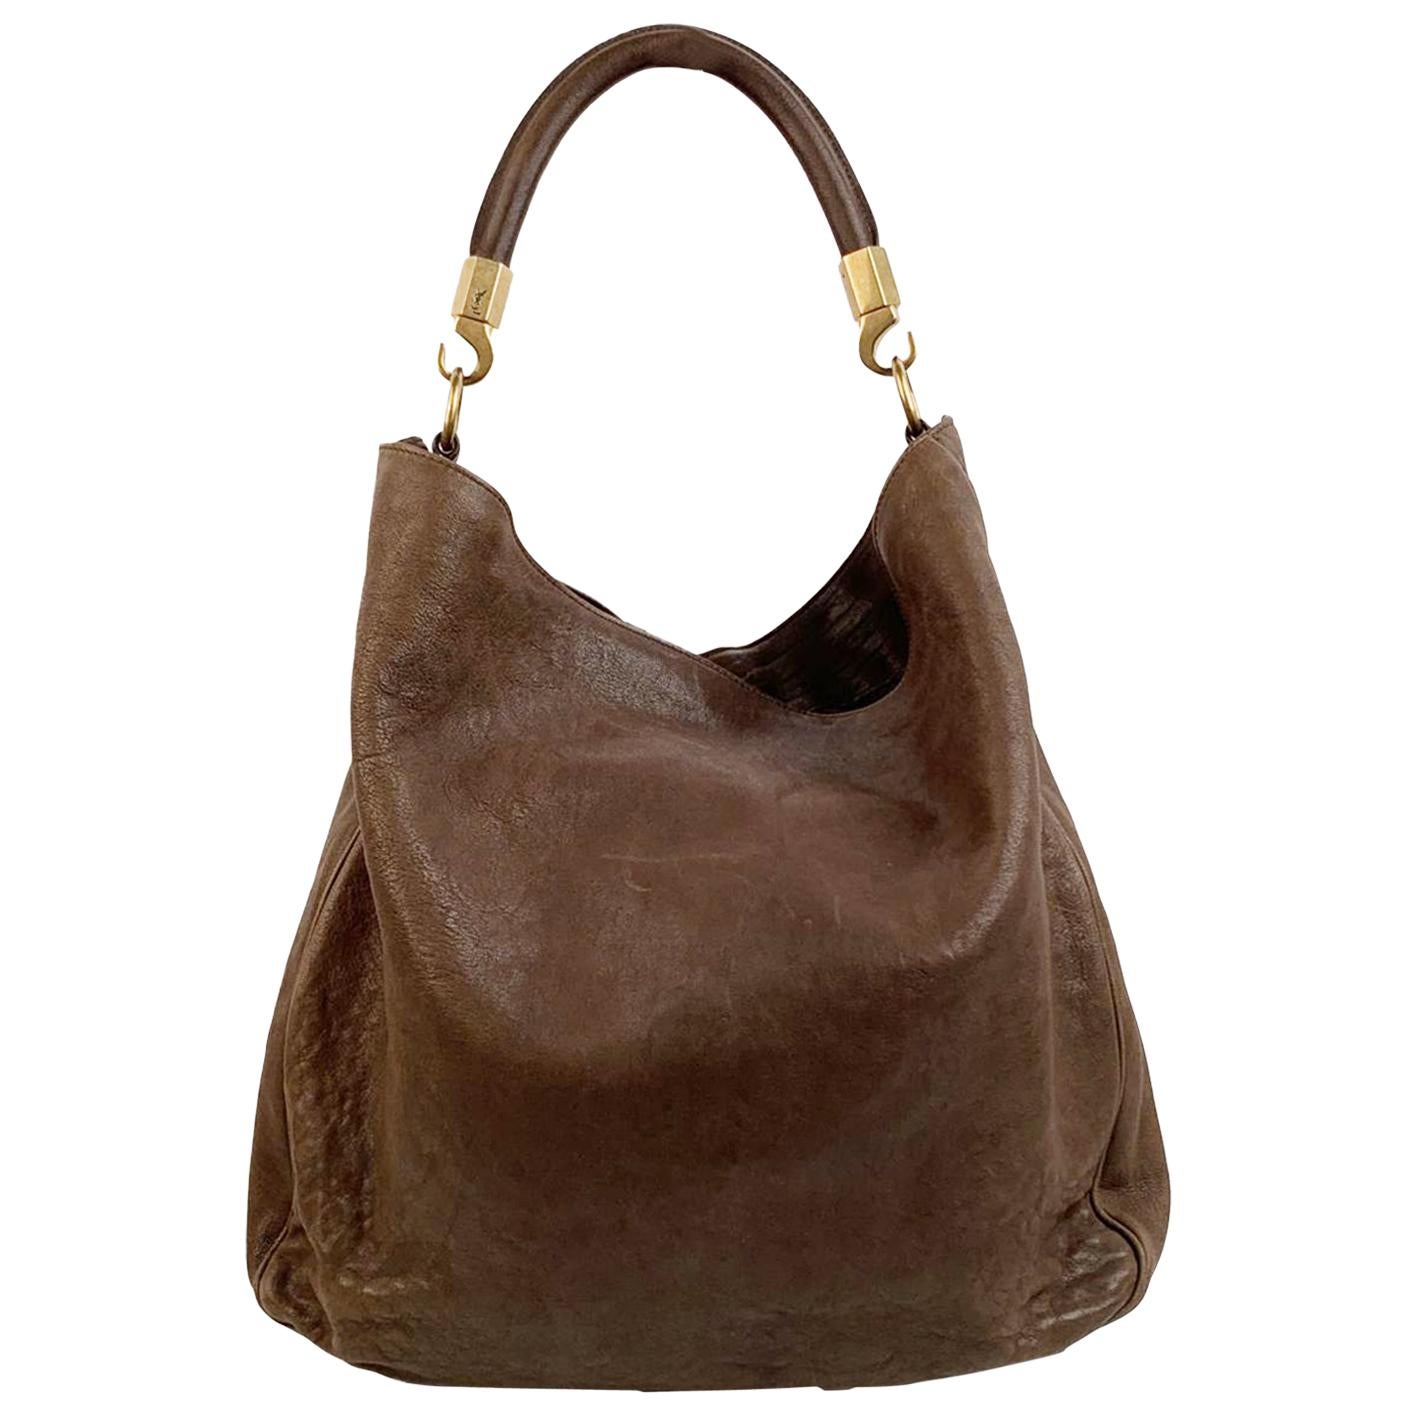 OVER EARTH Genuine Leather Hobo Handbags for Women India | Ubuy